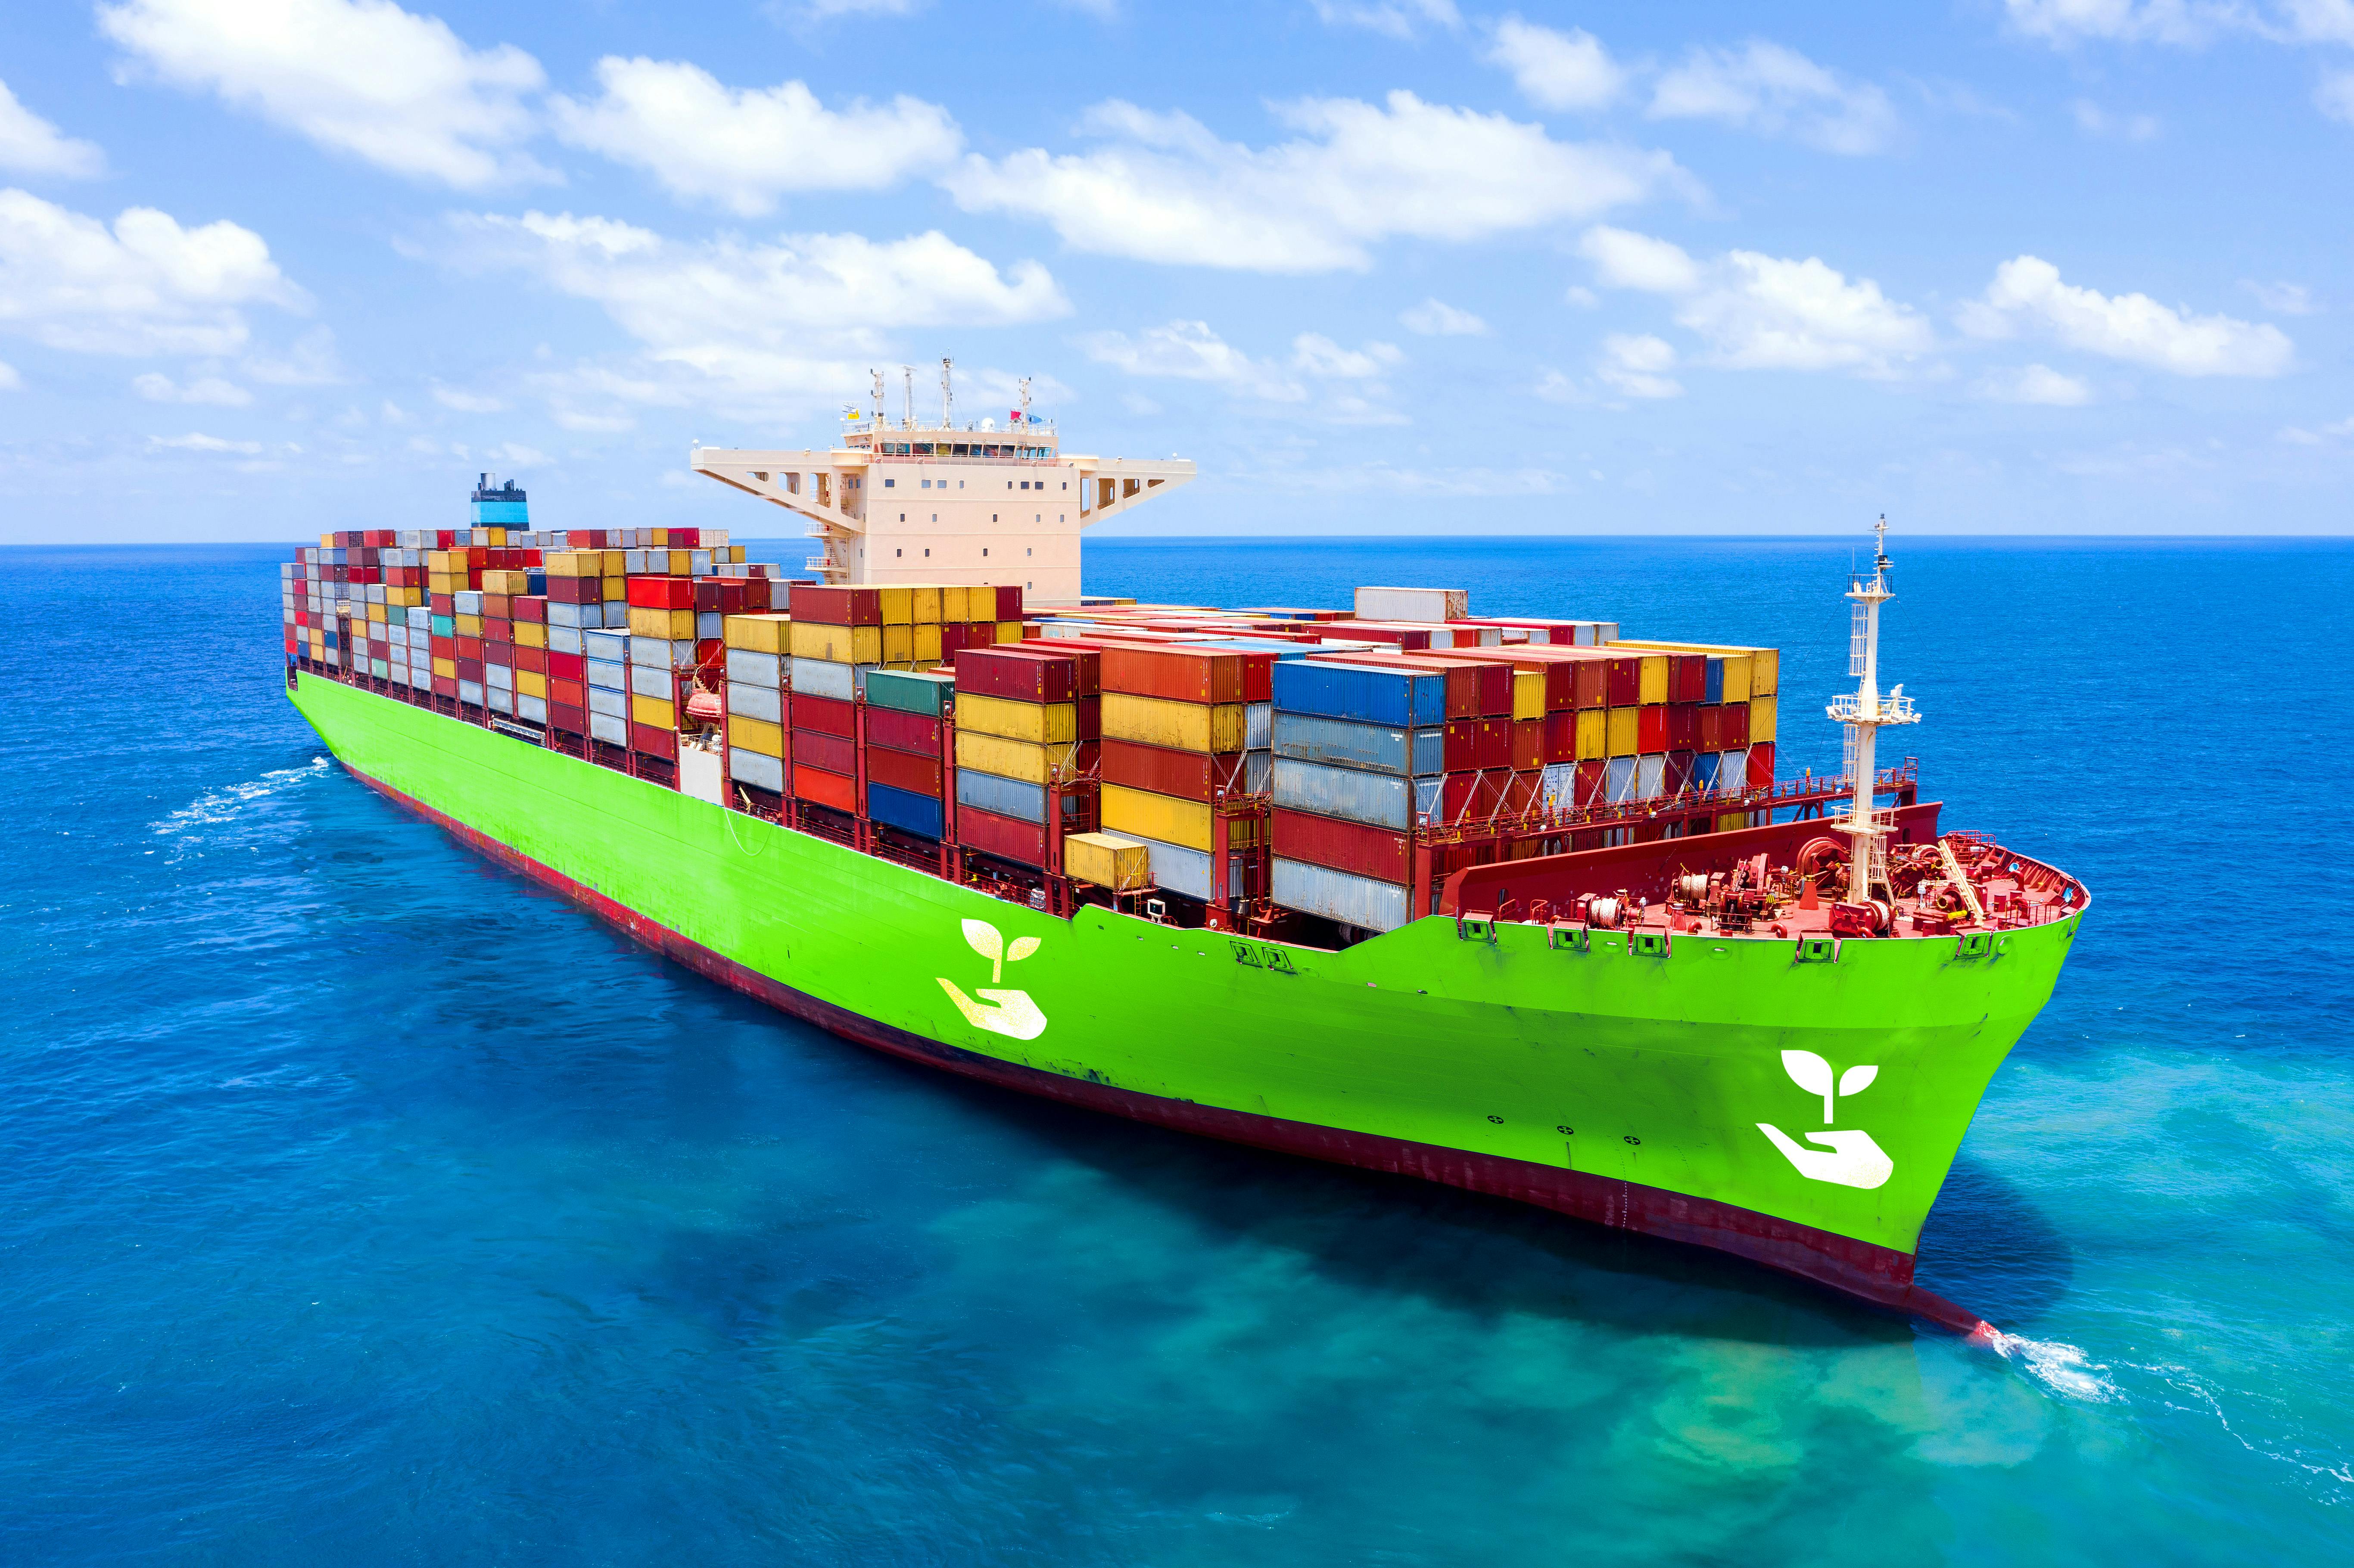 Green cargo ship sailing on the ocean.